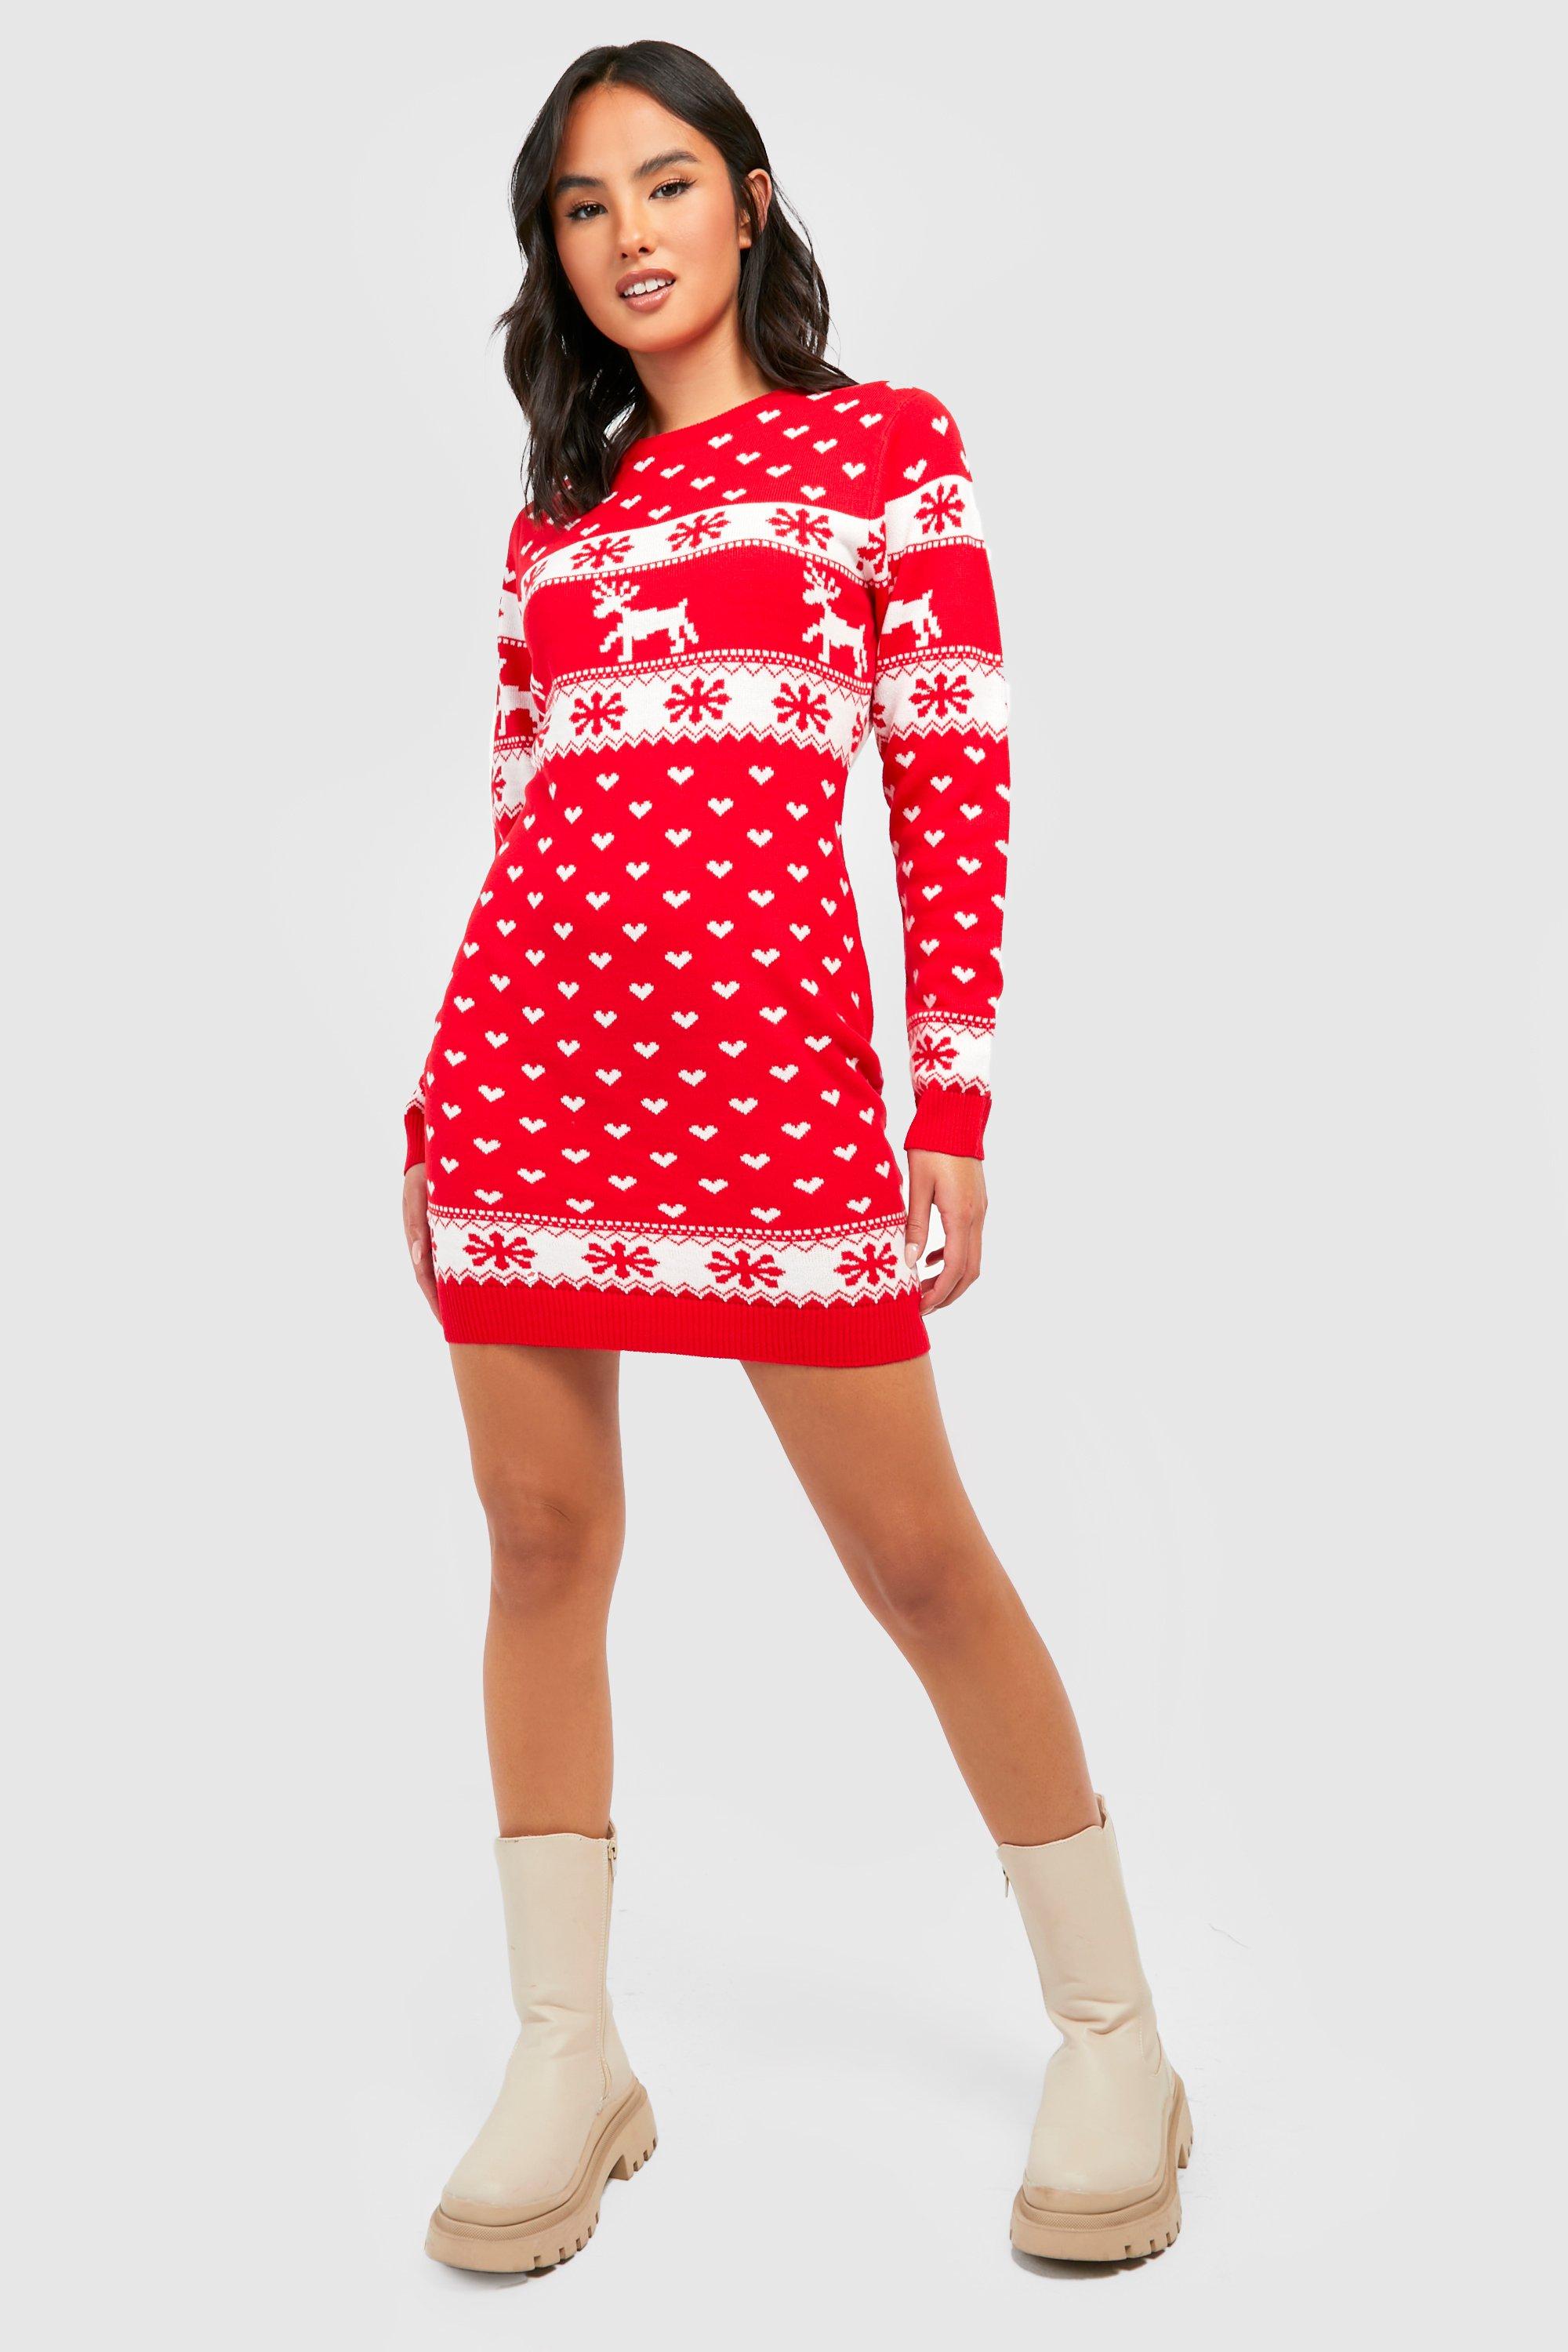 Boohoo Womens Lottie Reindeers & Snowflake Christmas Jumper Dress | eBay